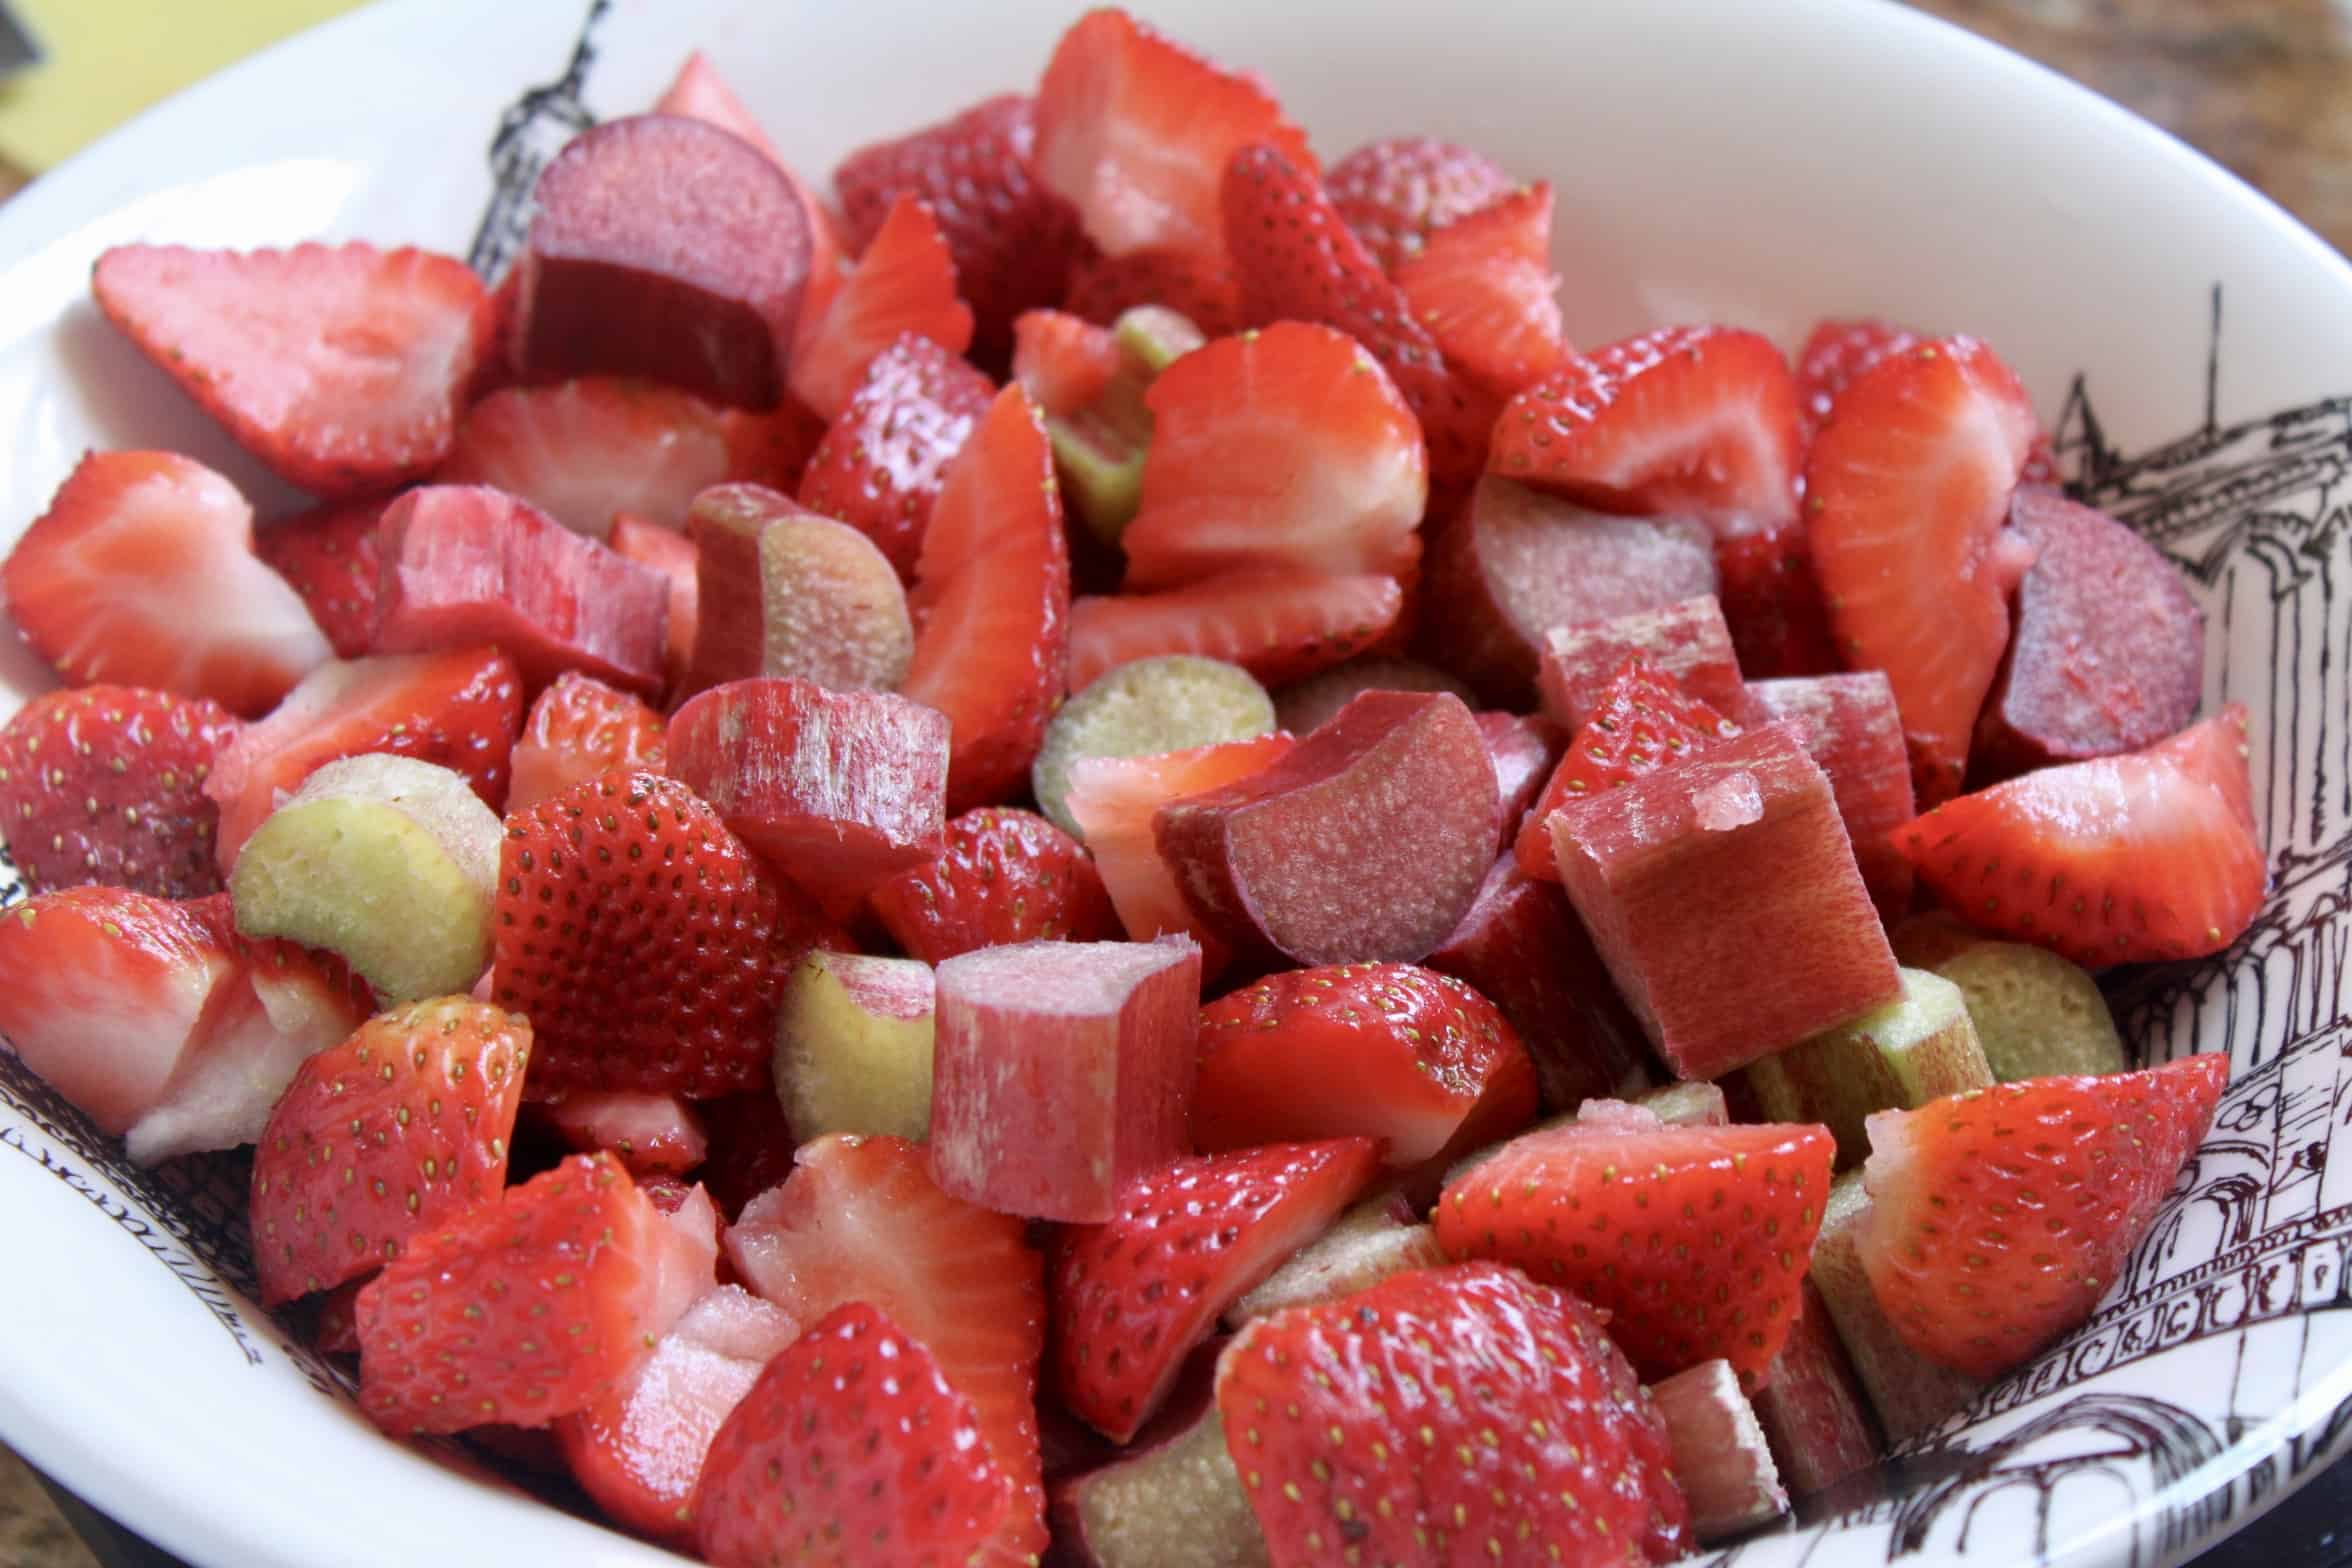 chopped strawberries and rhubarb